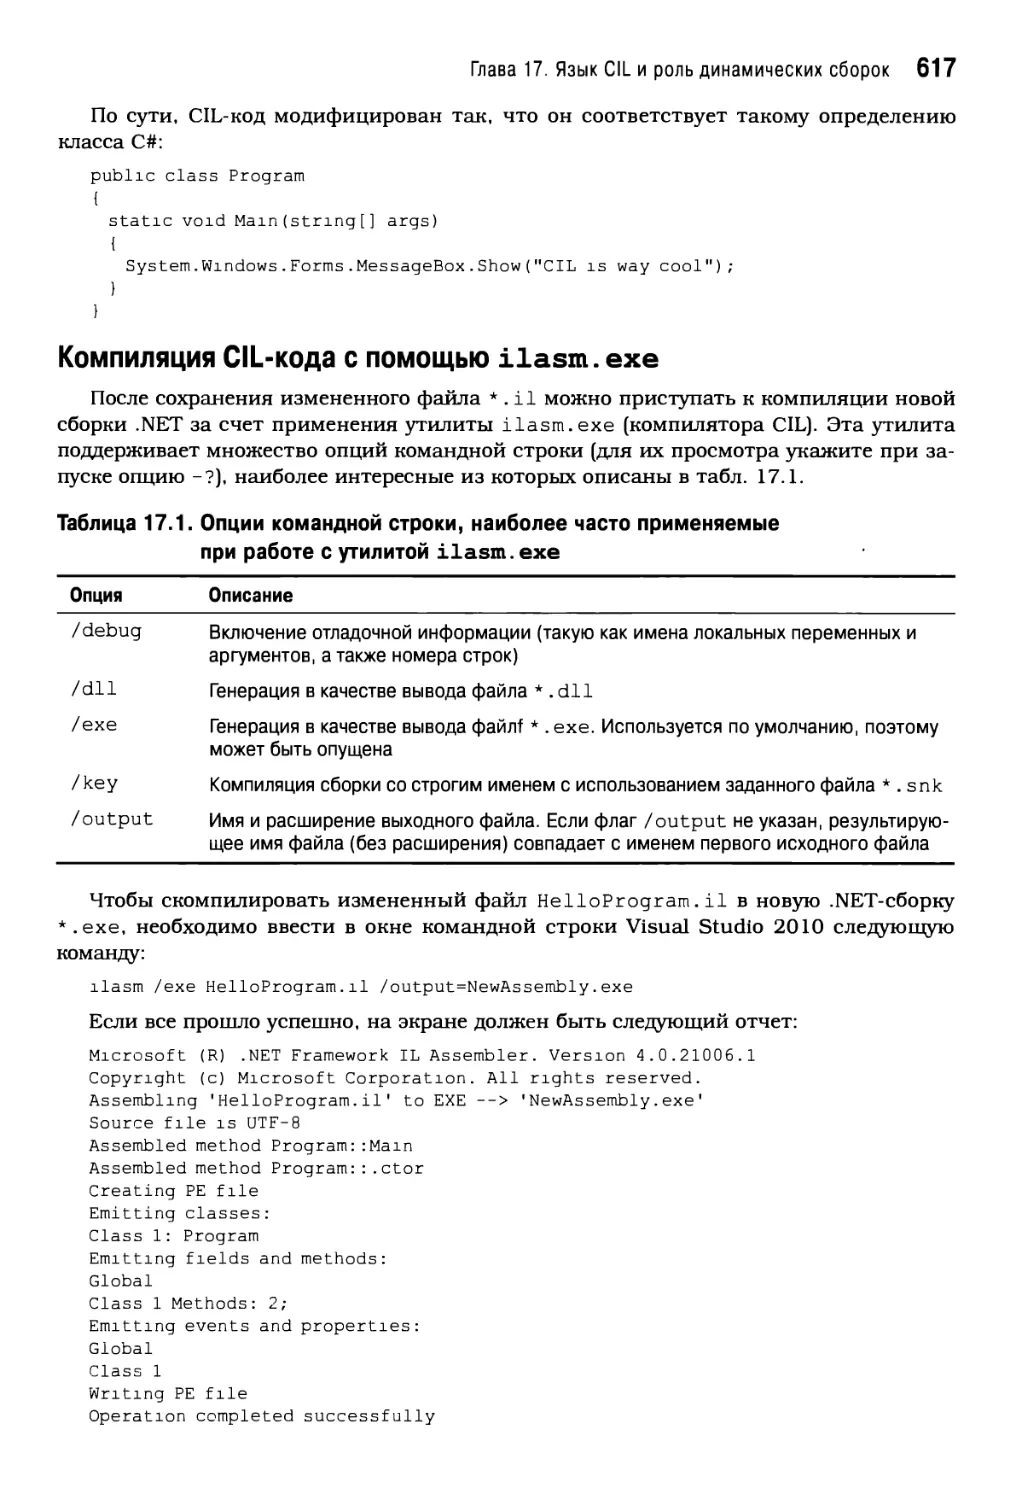 Компиляция CIL-кодас помощью ilasm.exe